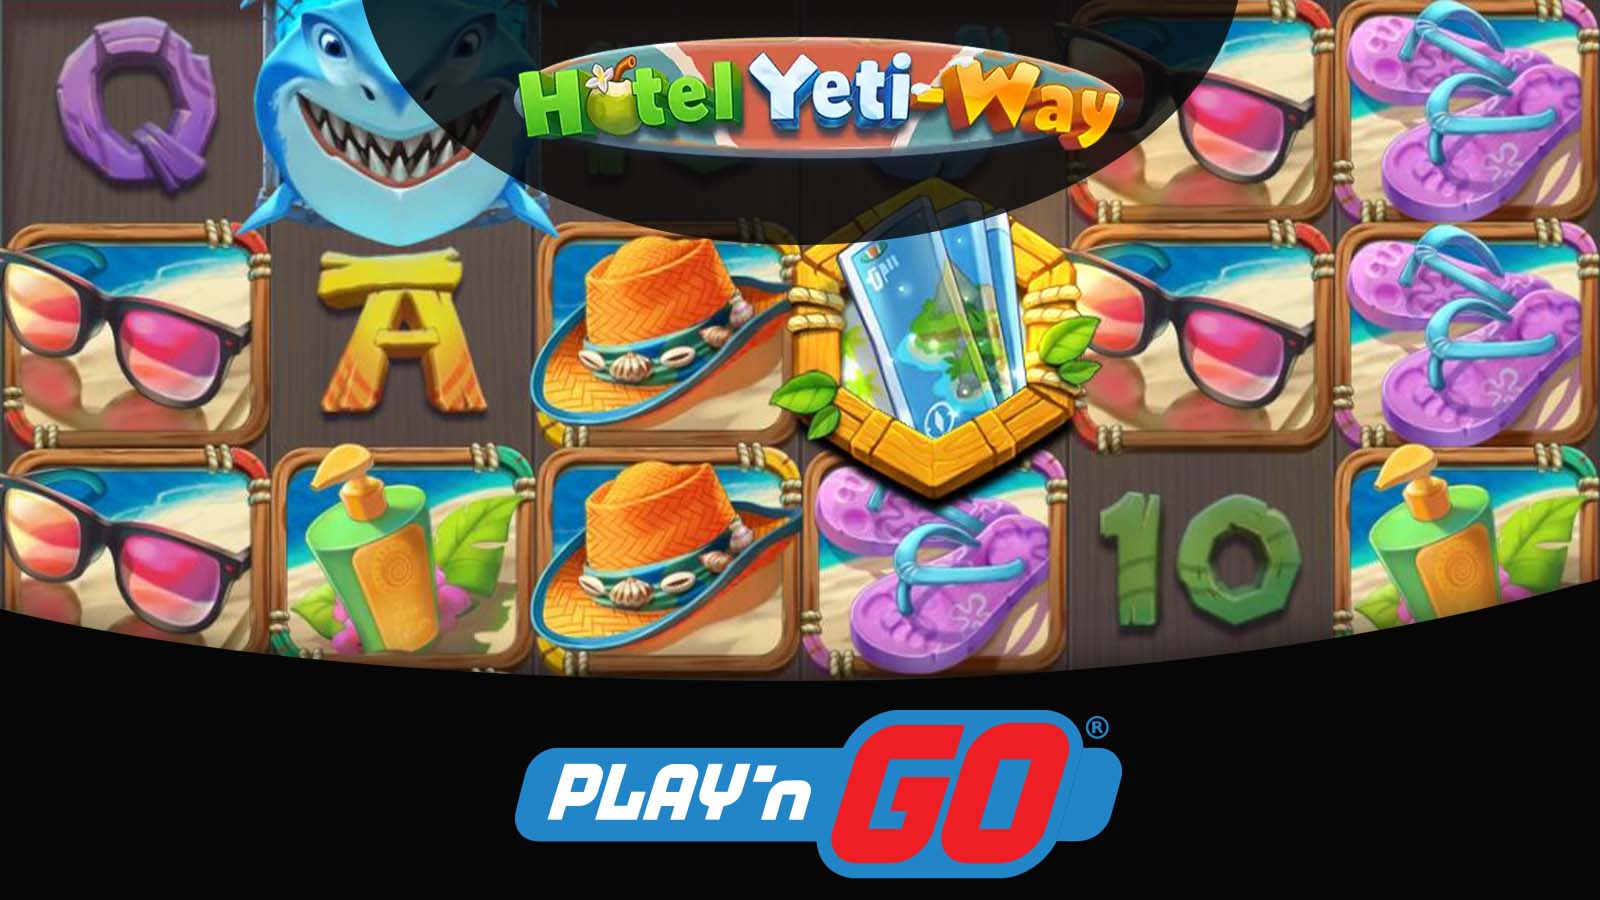 Hotel Yeti Ways – Play N’ Go